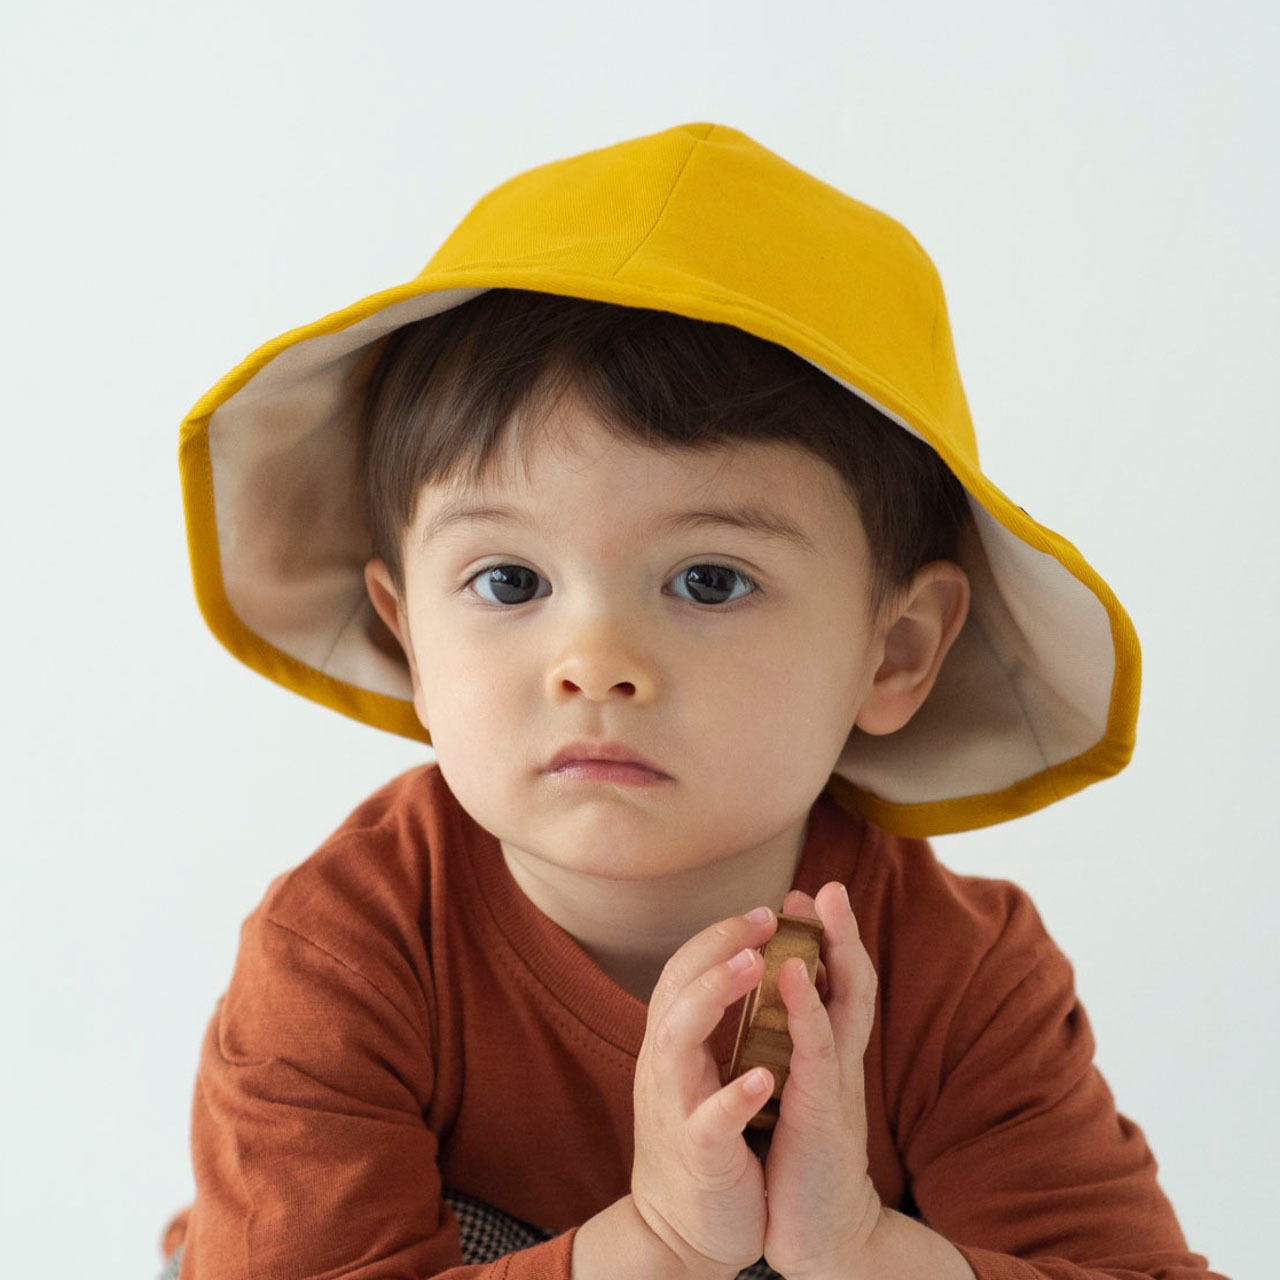 チューリップハット【イエロー】48cm ブランド 夏 子供 帽子 赤ちゃん 男の子 女の子 日除け 紫外線 ベビー キッズ ハット キャップ 日本製 出産祝い